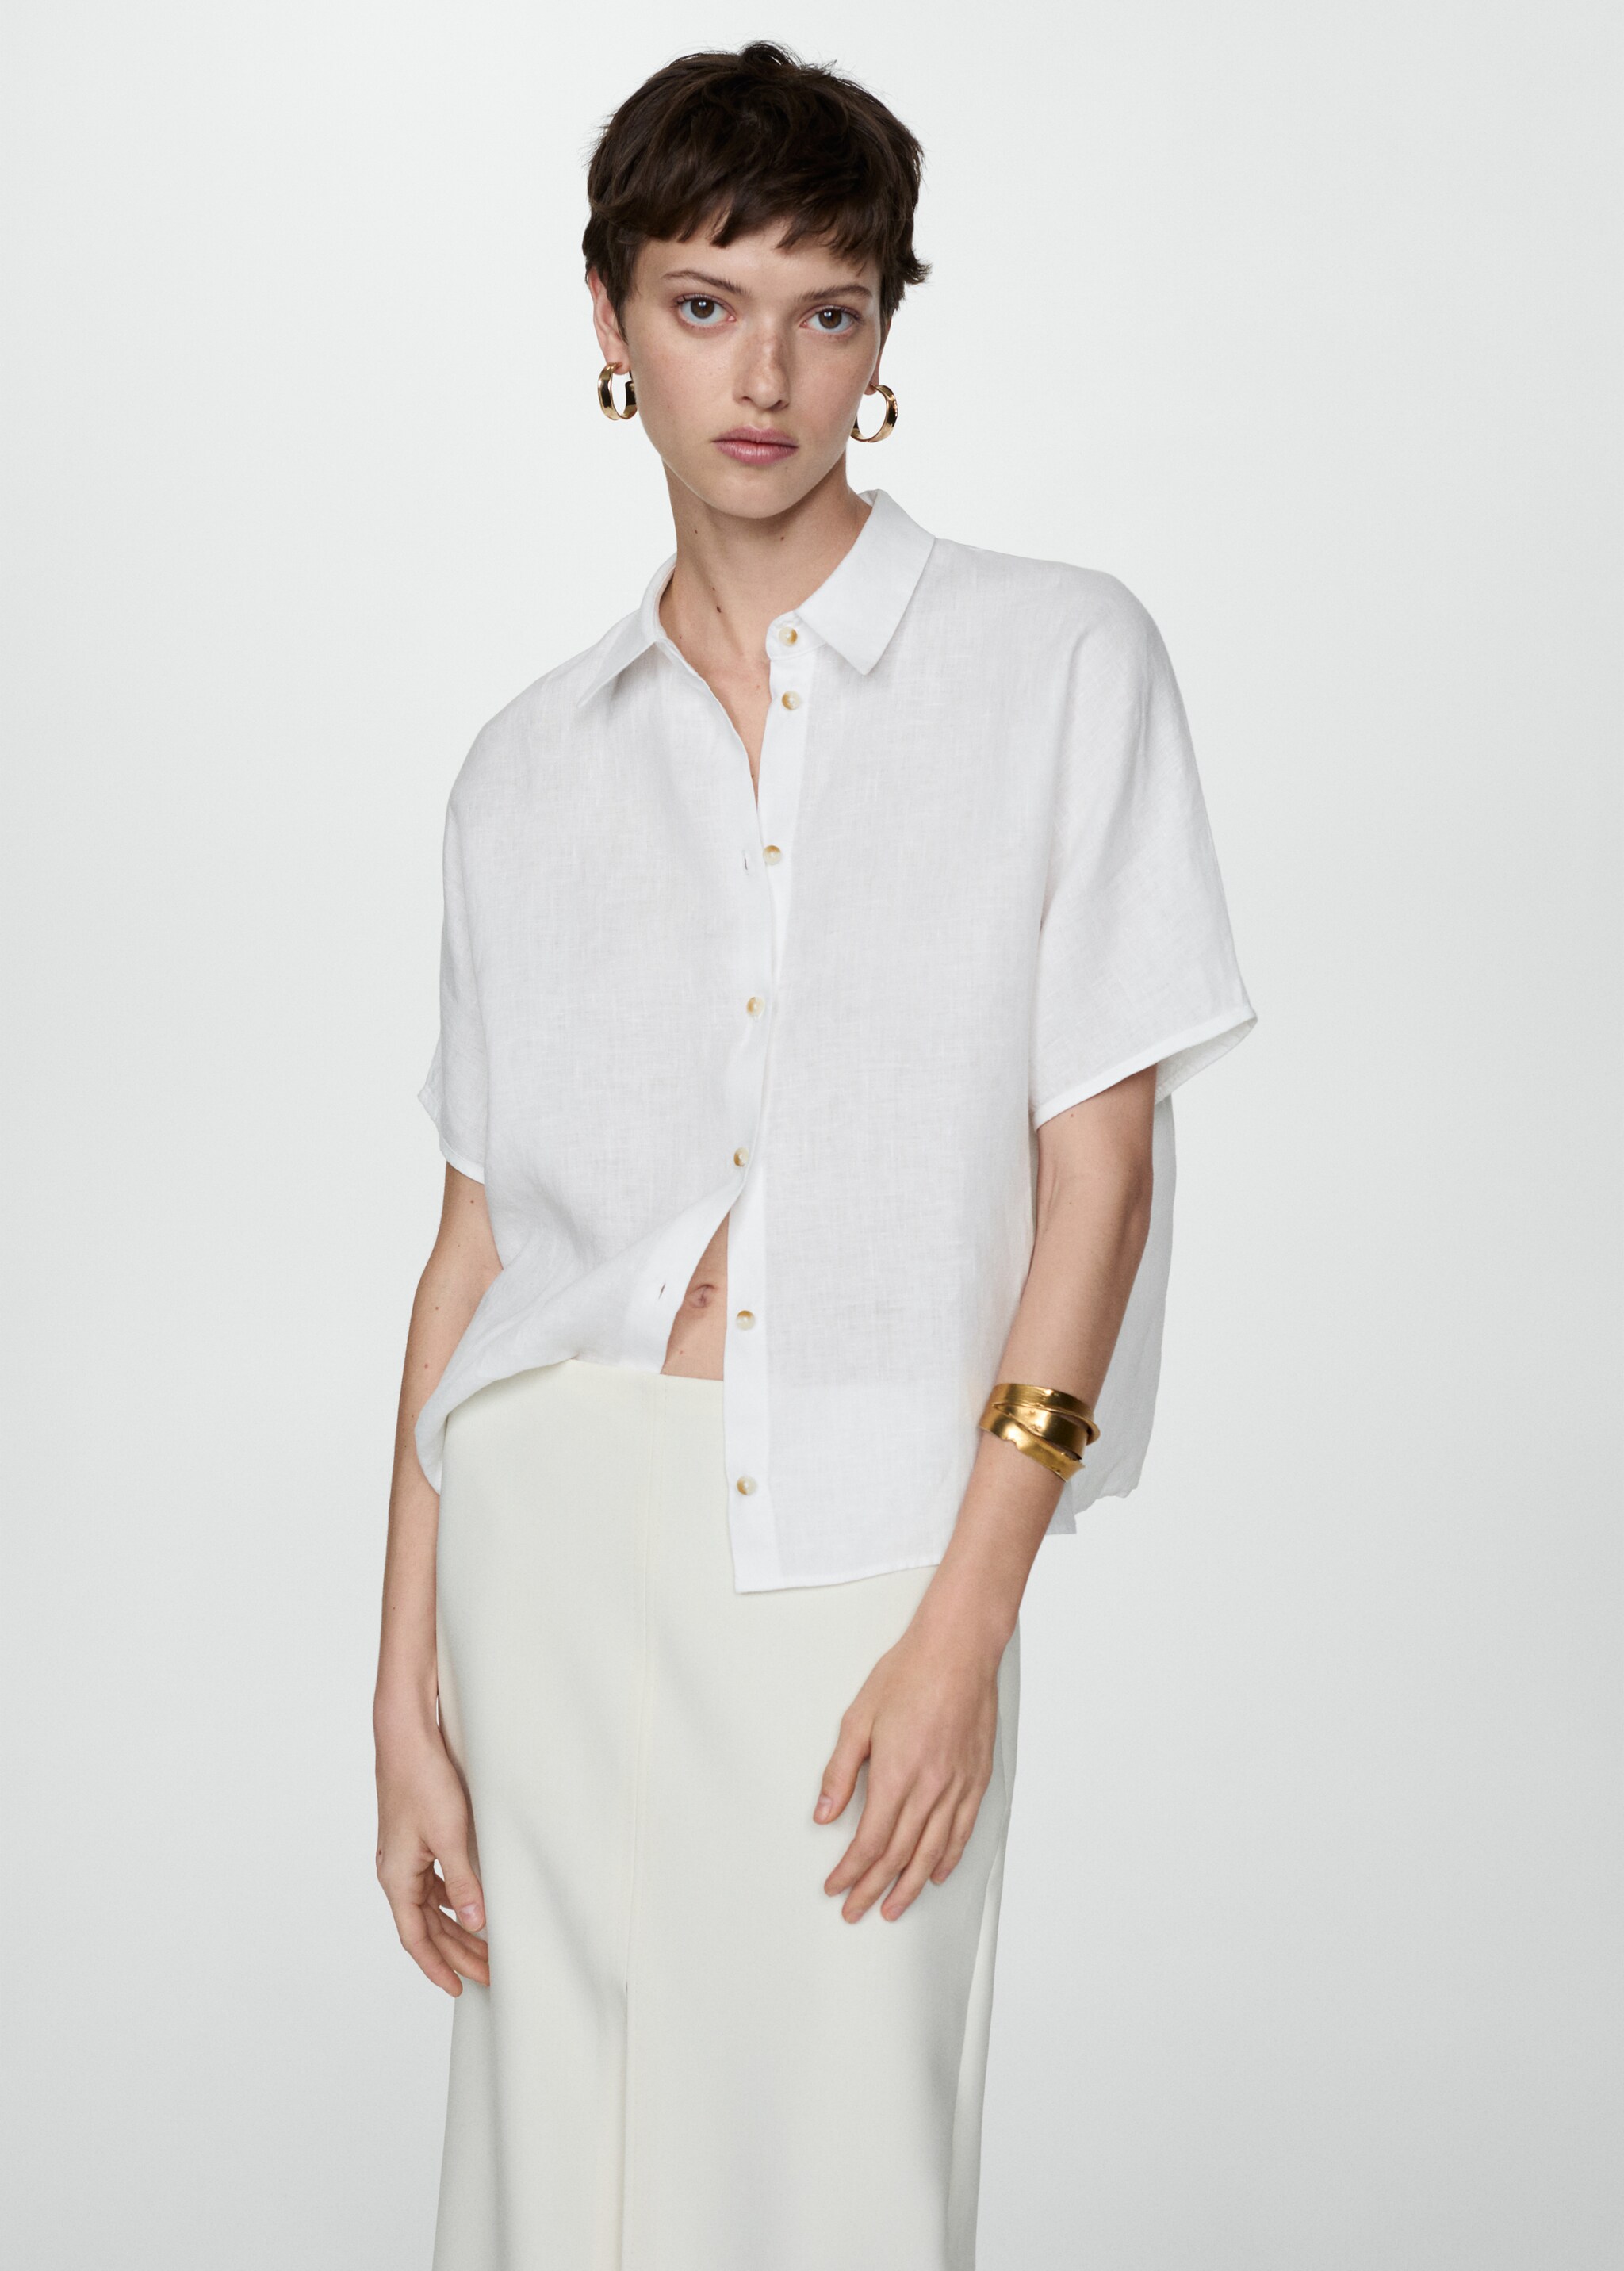 Linen 100% shirt - Medium plane